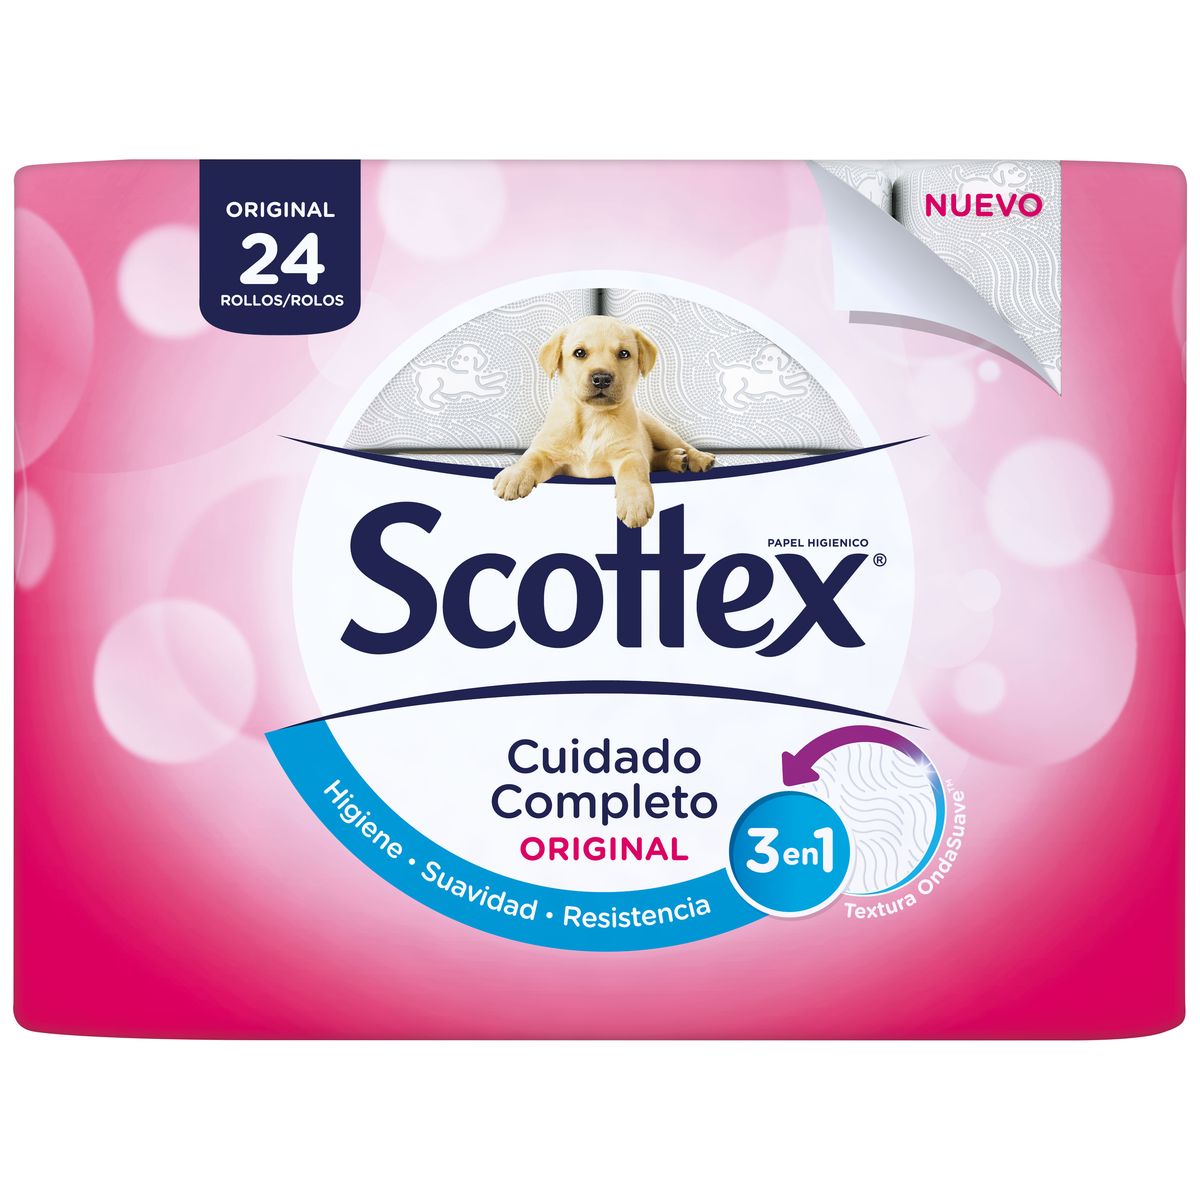 Scottex saca un papel higiénico con mensajes de ánimo para los estreñidos